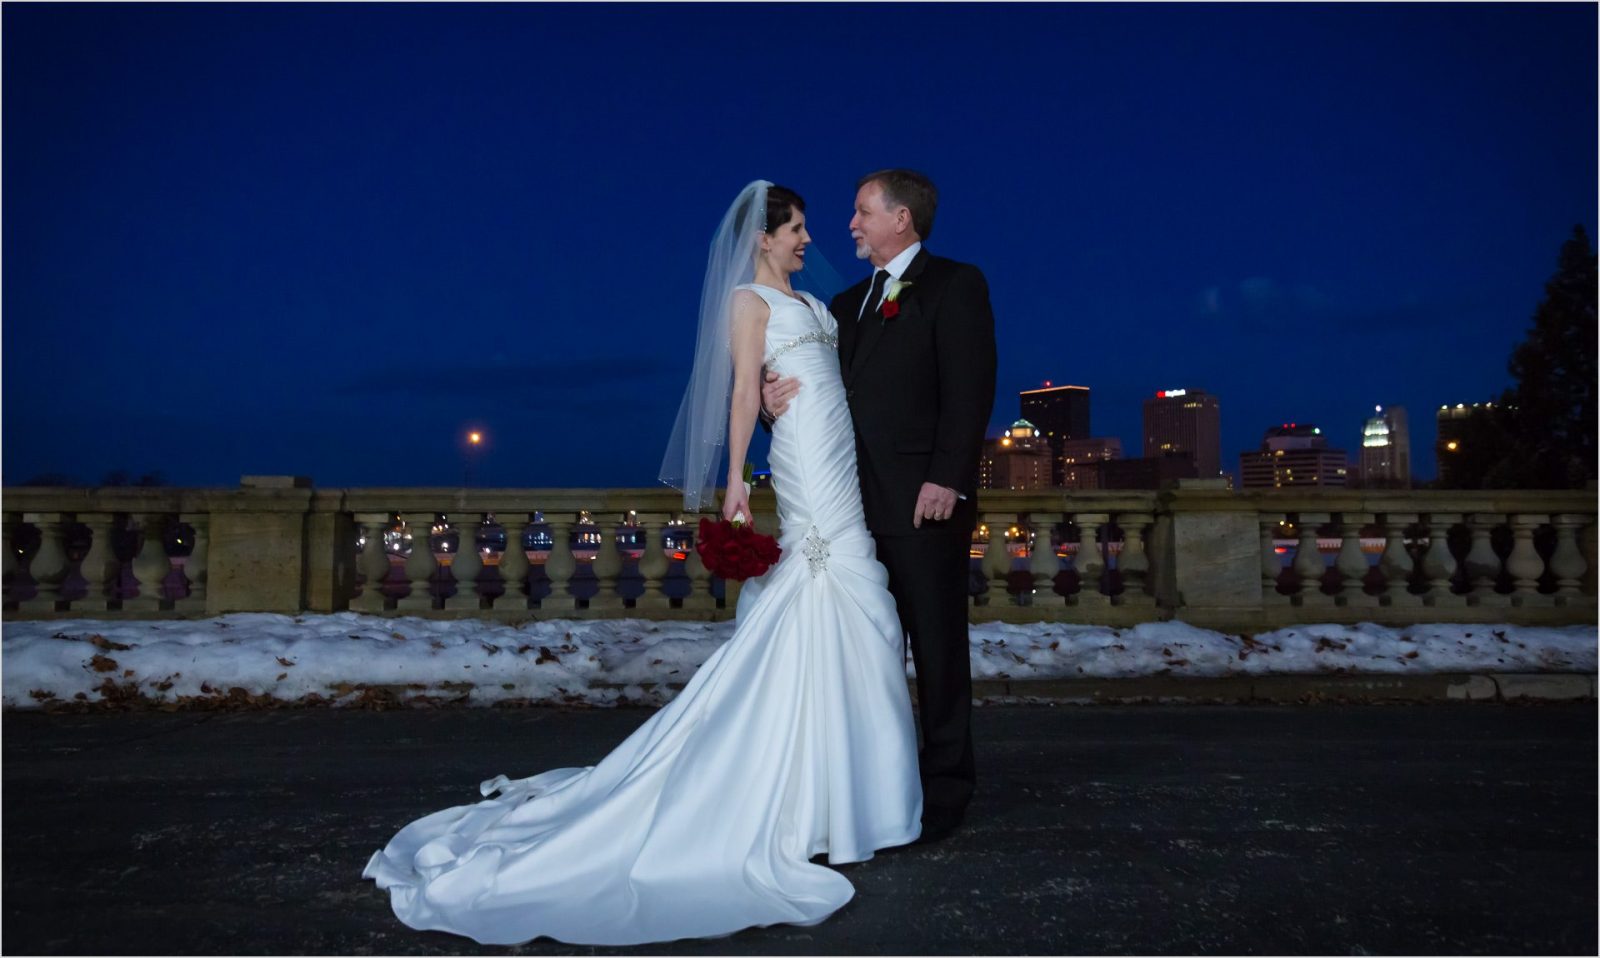 Dayton Art Institute Wedding Snow Bride Groom